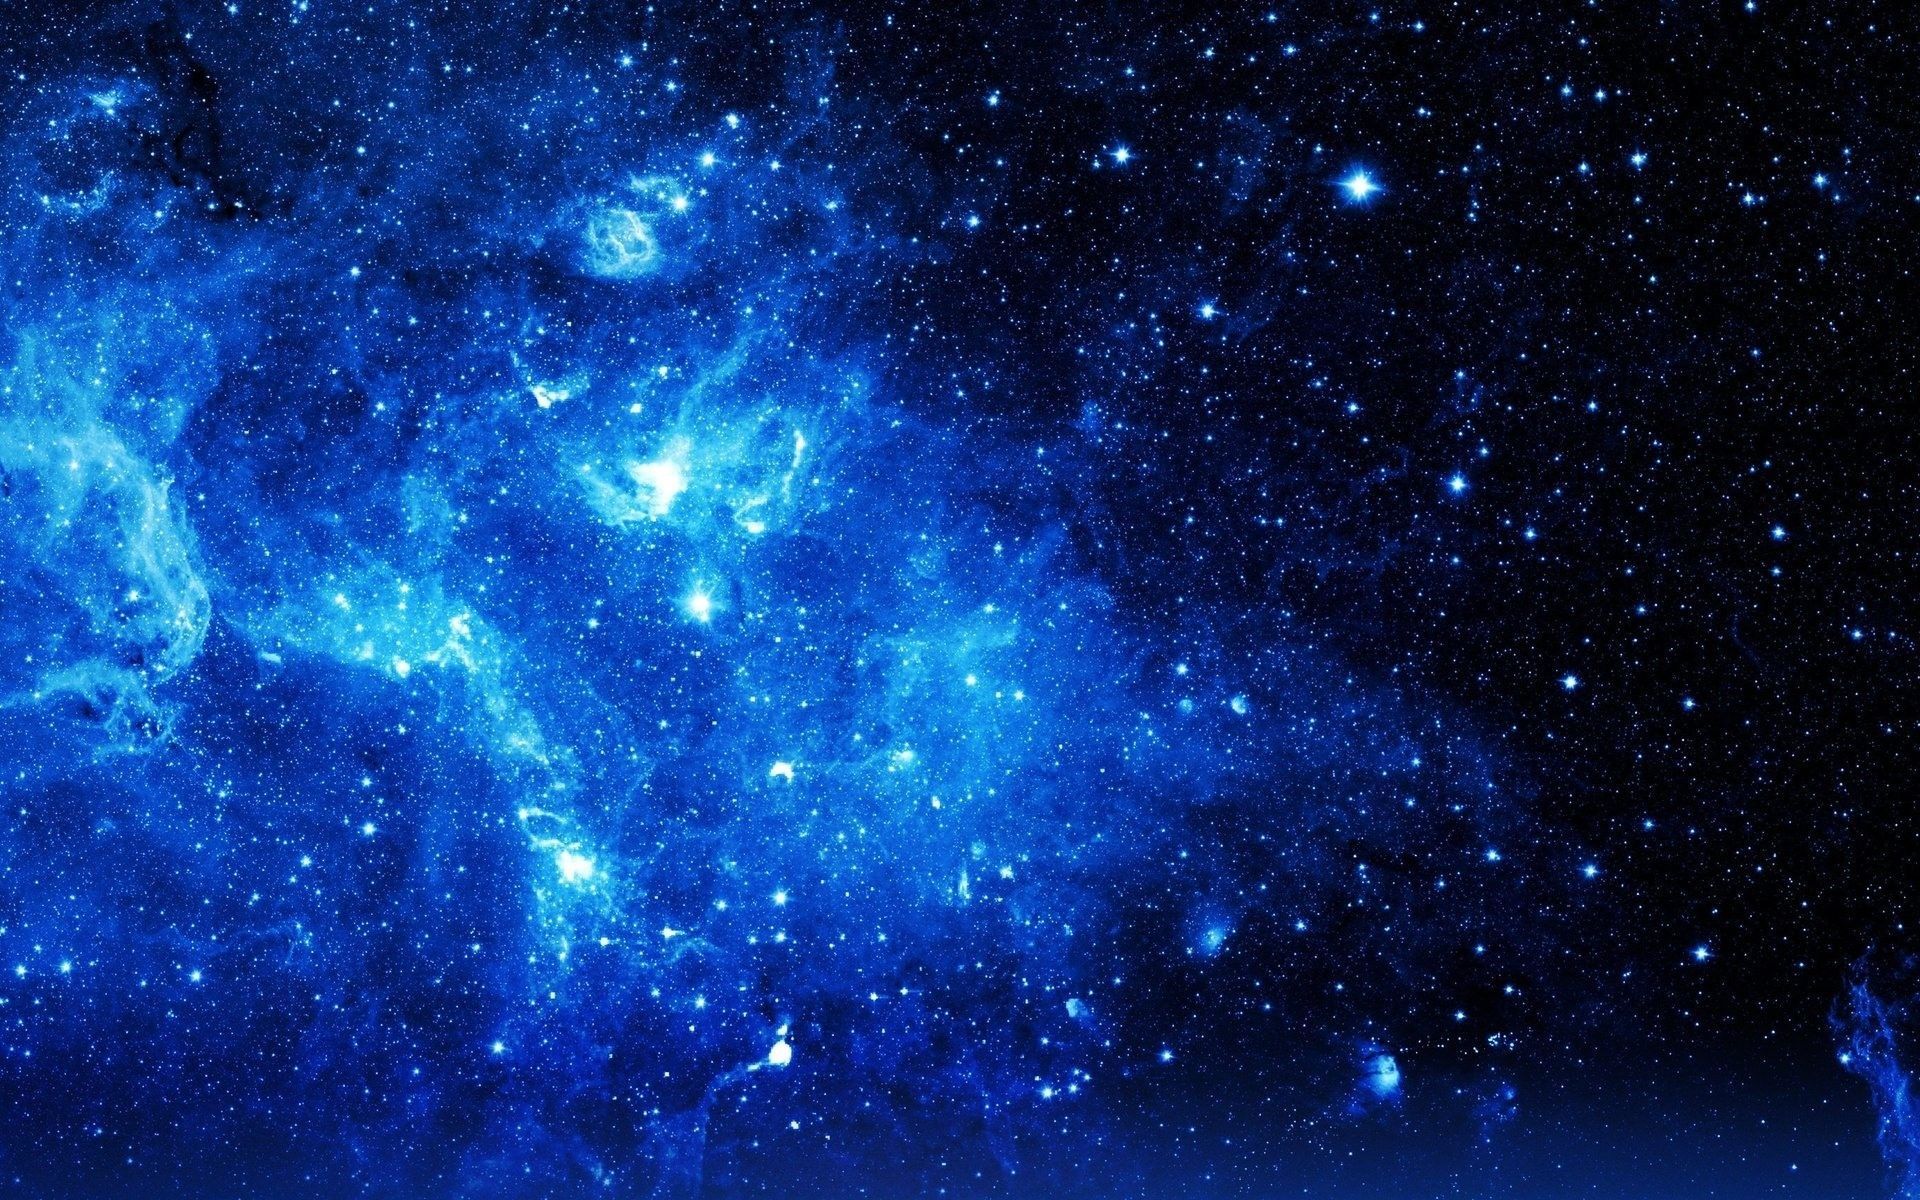 Galaxy: Ngắm nhìn vẻ đẹp tuyệt vời của vũ trụ với ngân hà đầy màu sắc. Hình ảnh ngân hà sẽ đưa bạn đến những vùng đất xa xôi, khám phá những hành tinh, sao và hố đen đầy bí ẩn.